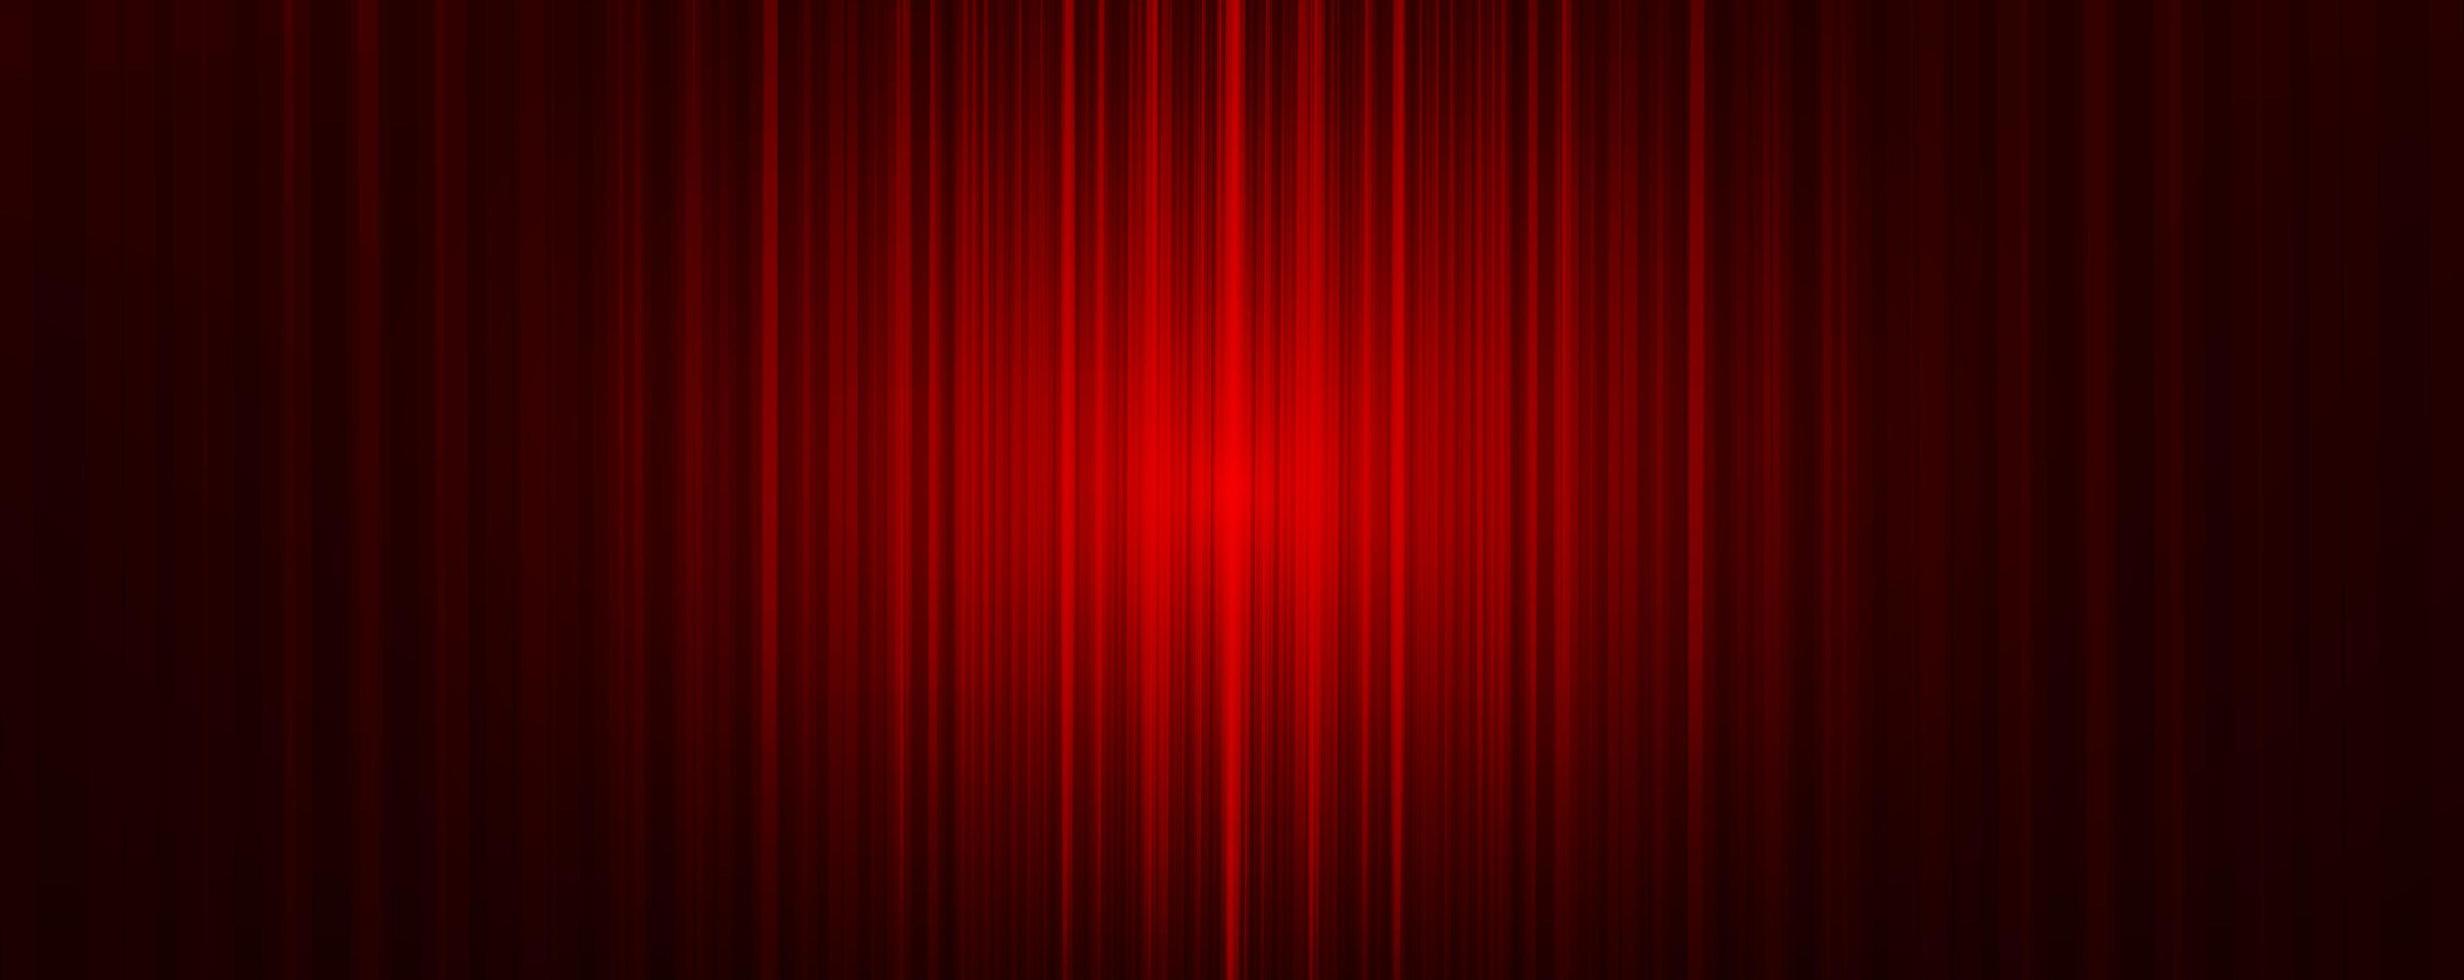 vector rood gordijn met lichte fase achtergrond, moderne stijl.